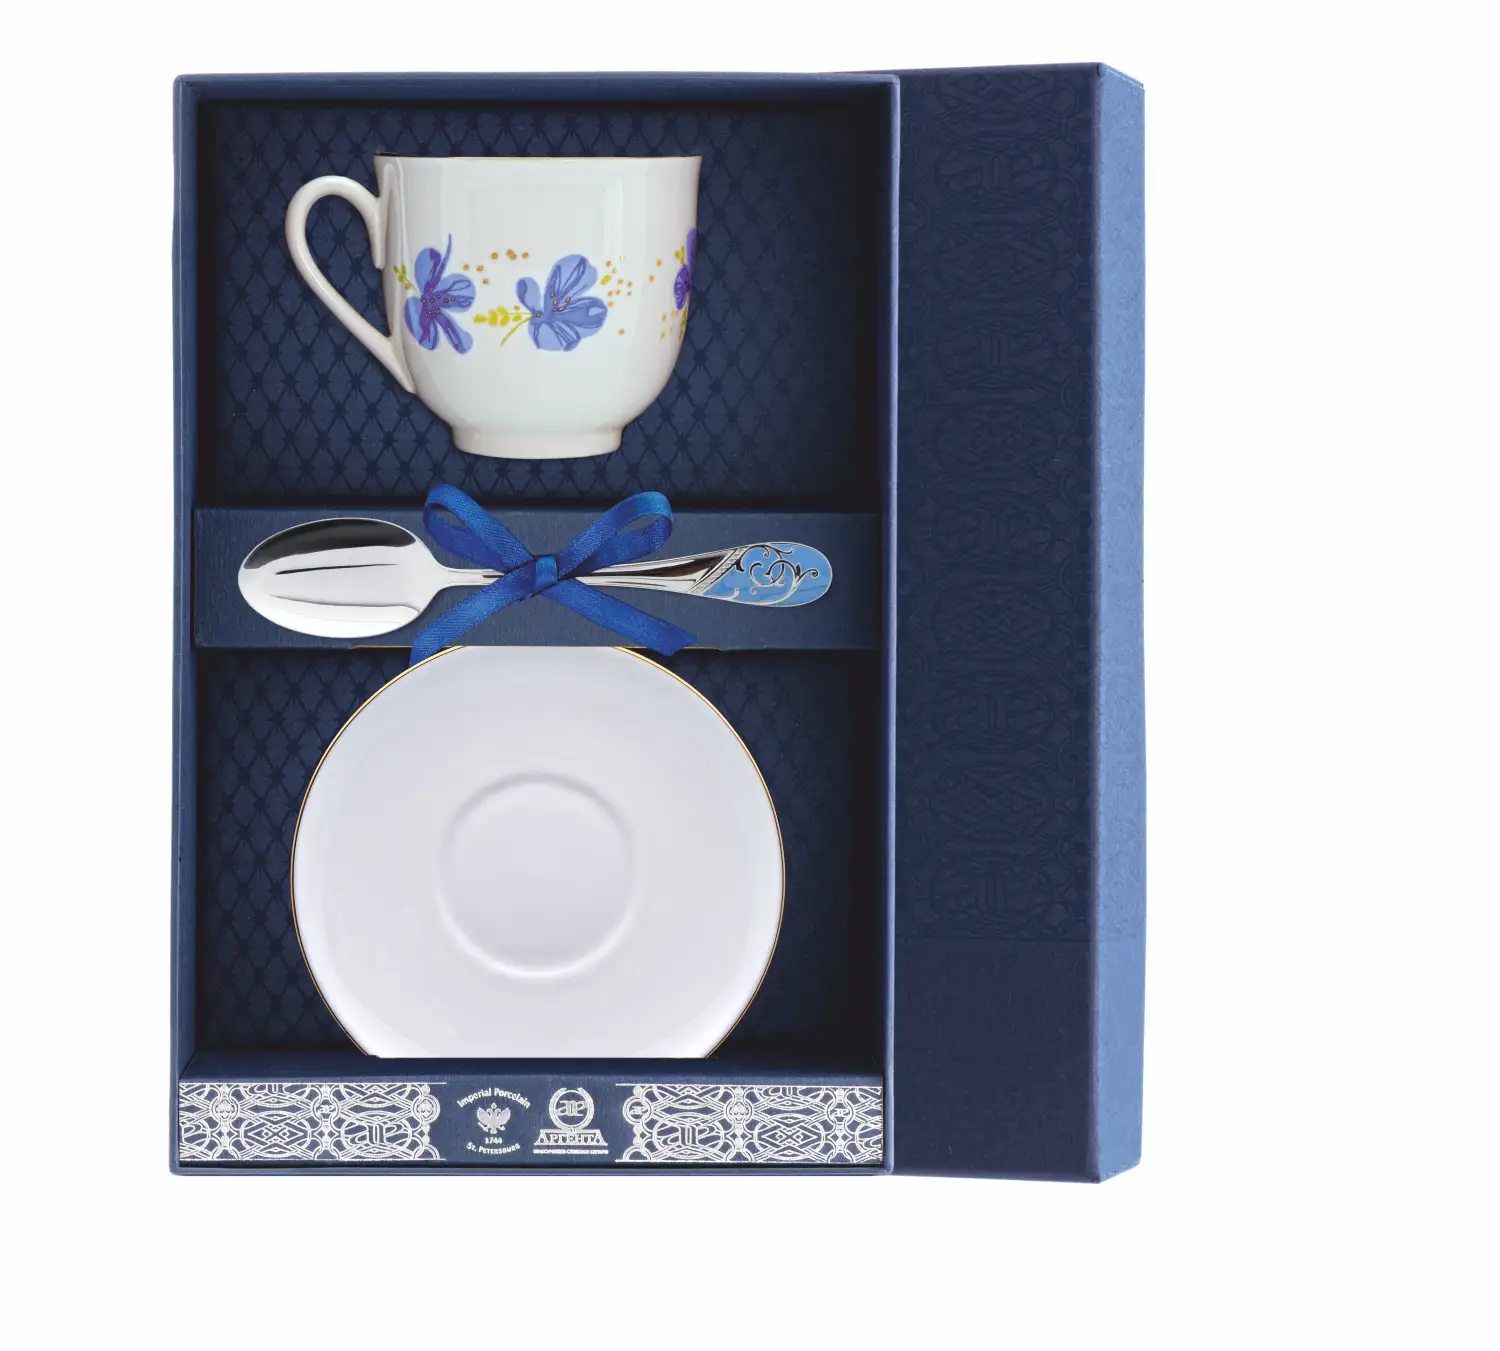 Набор чайный Ландыш - Голубые цветы: блюдце, ложка, чашка (Серебро 925) набор чайный ландыш фигурное катание блюдце ложка чашка серебро 925